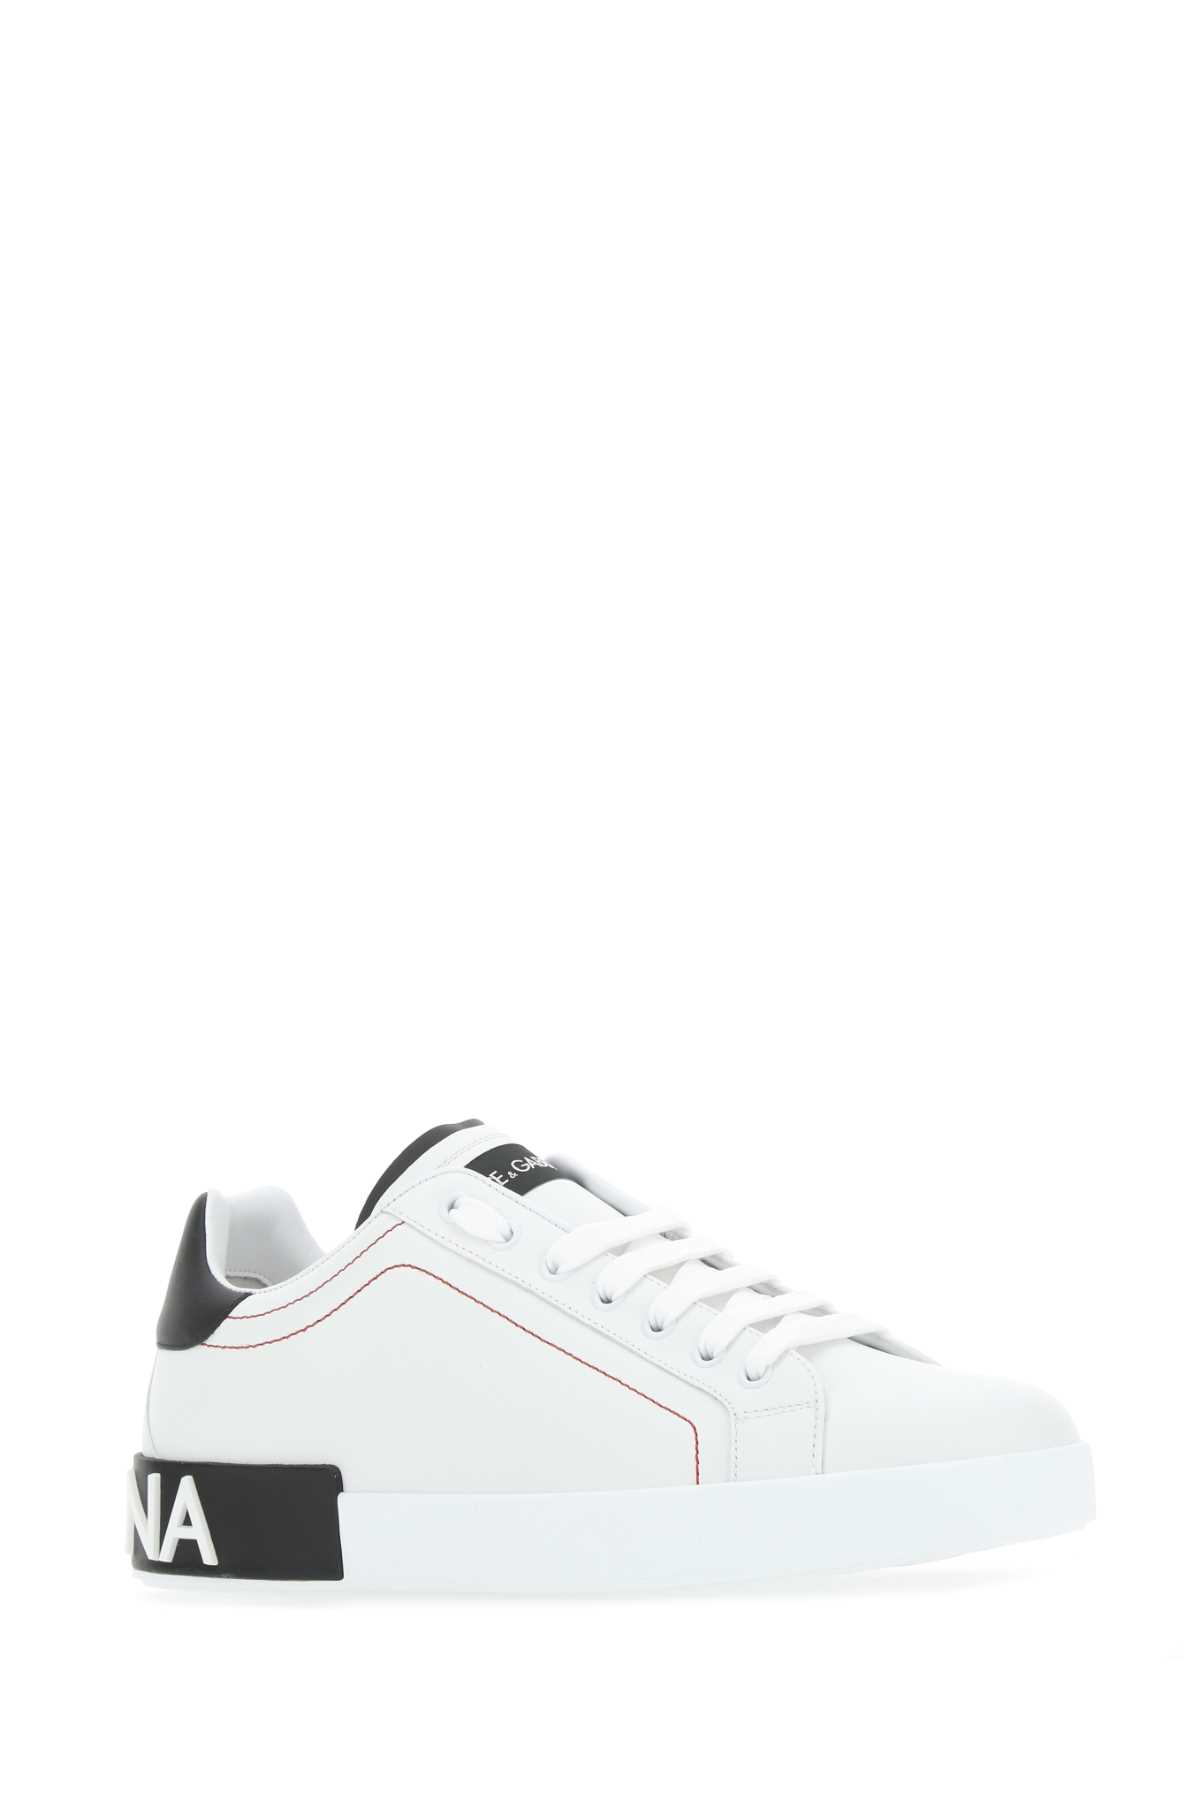 Dolce & Gabbana White Nappa Leather Portofino Sneakers In Bianconero